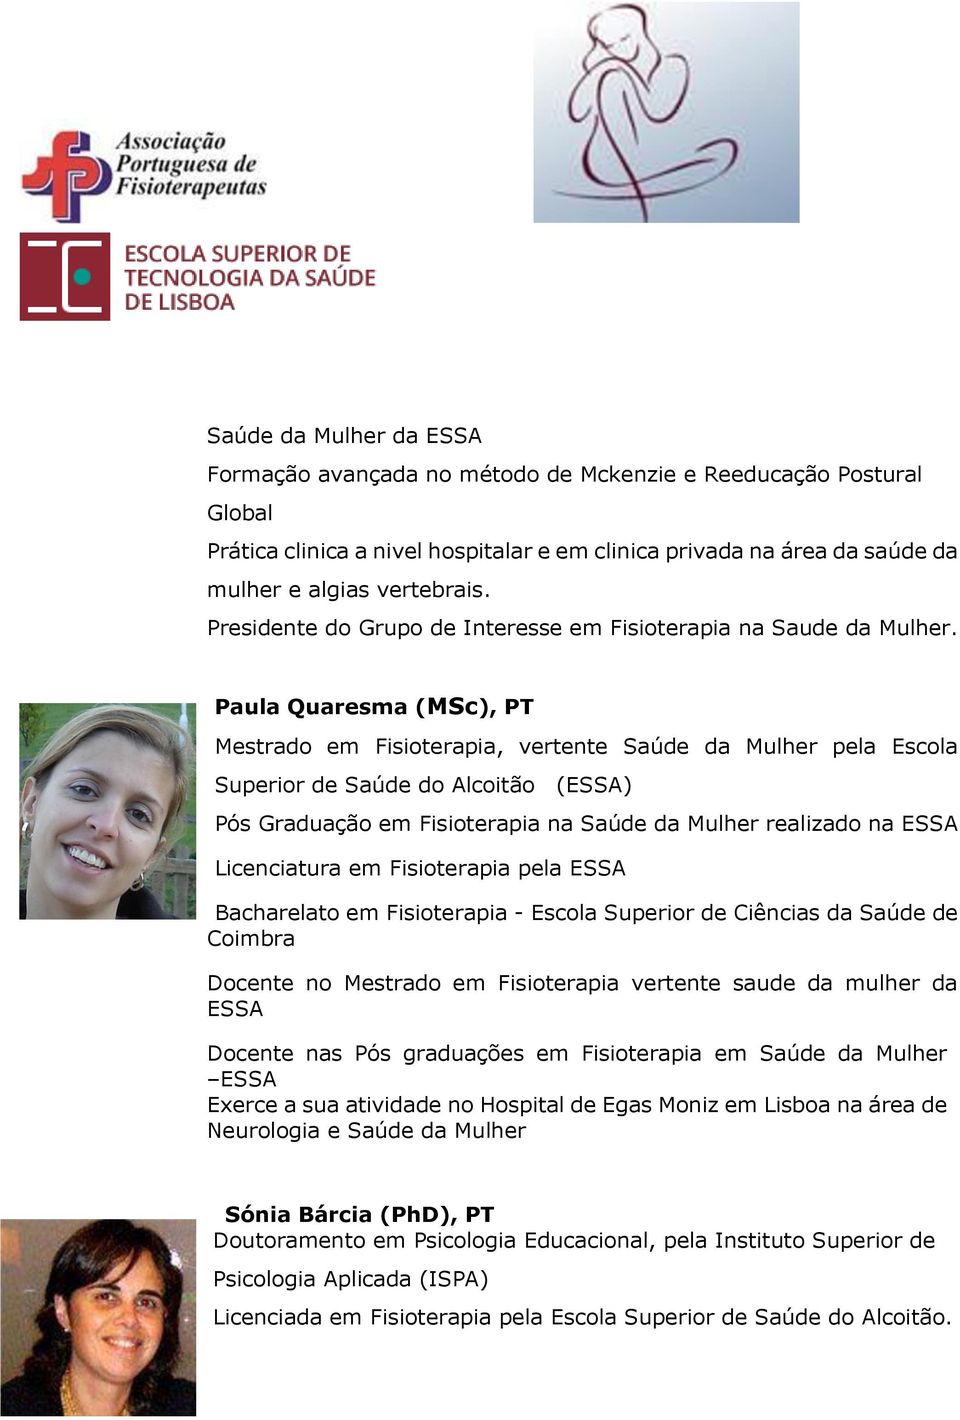 Paula Quaresma (MSc), PT Mestrado em Fisioterapia, vertente Saúde da Mulher pela Escola Superior de Saúde do Alcoitão (ESSA) Pós Graduação em Fisioterapia na Saúde da Mulher realizado na ESSA